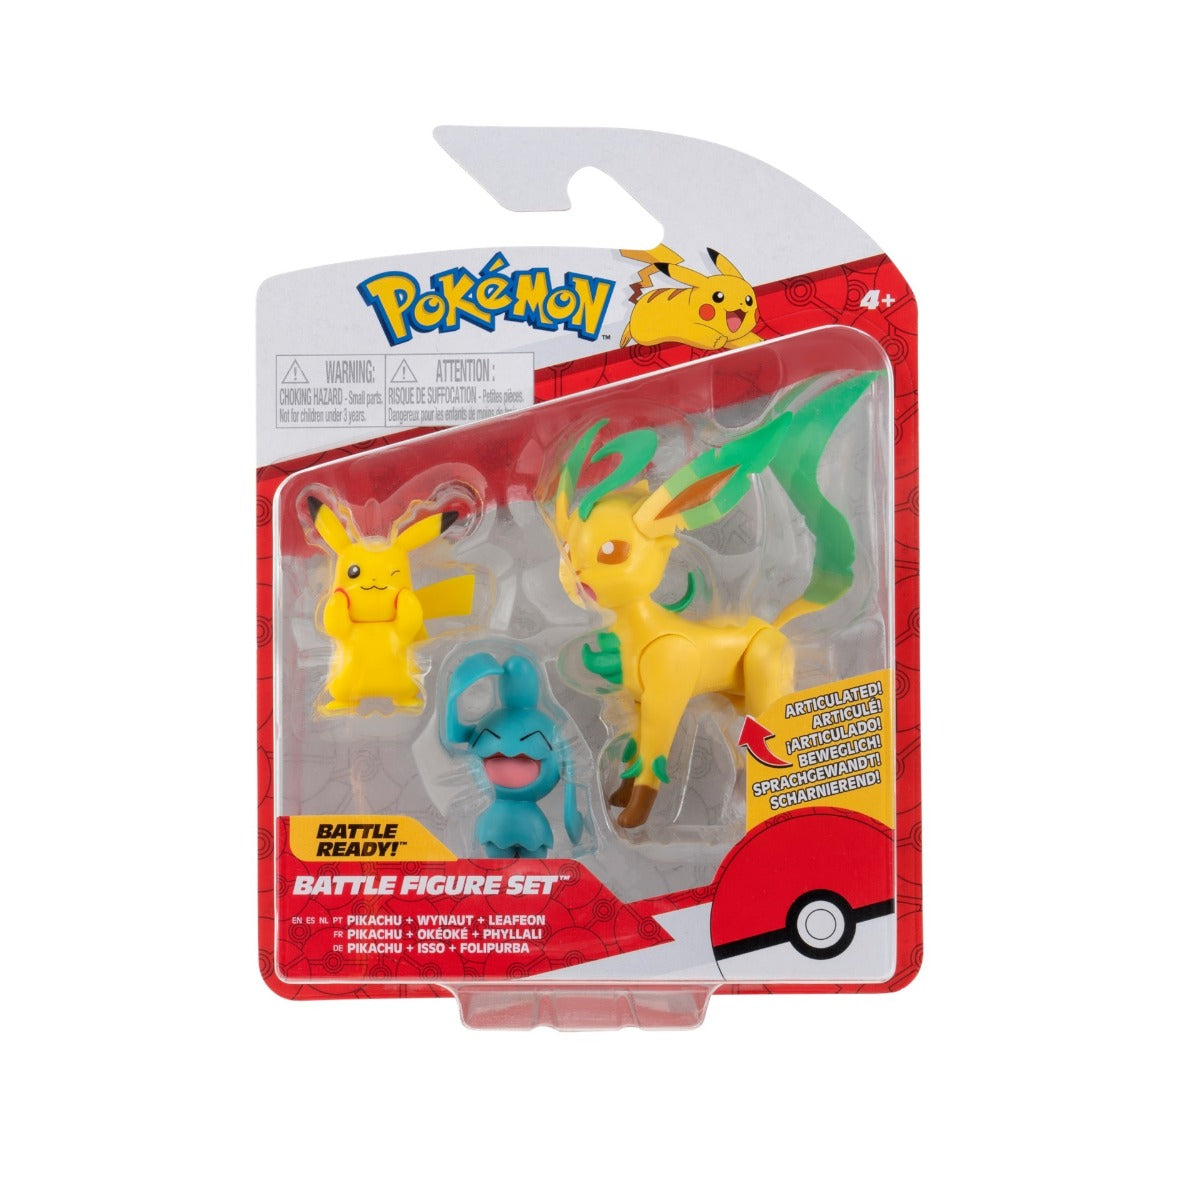 Pokémon - Battle Figure Set: 3 pack